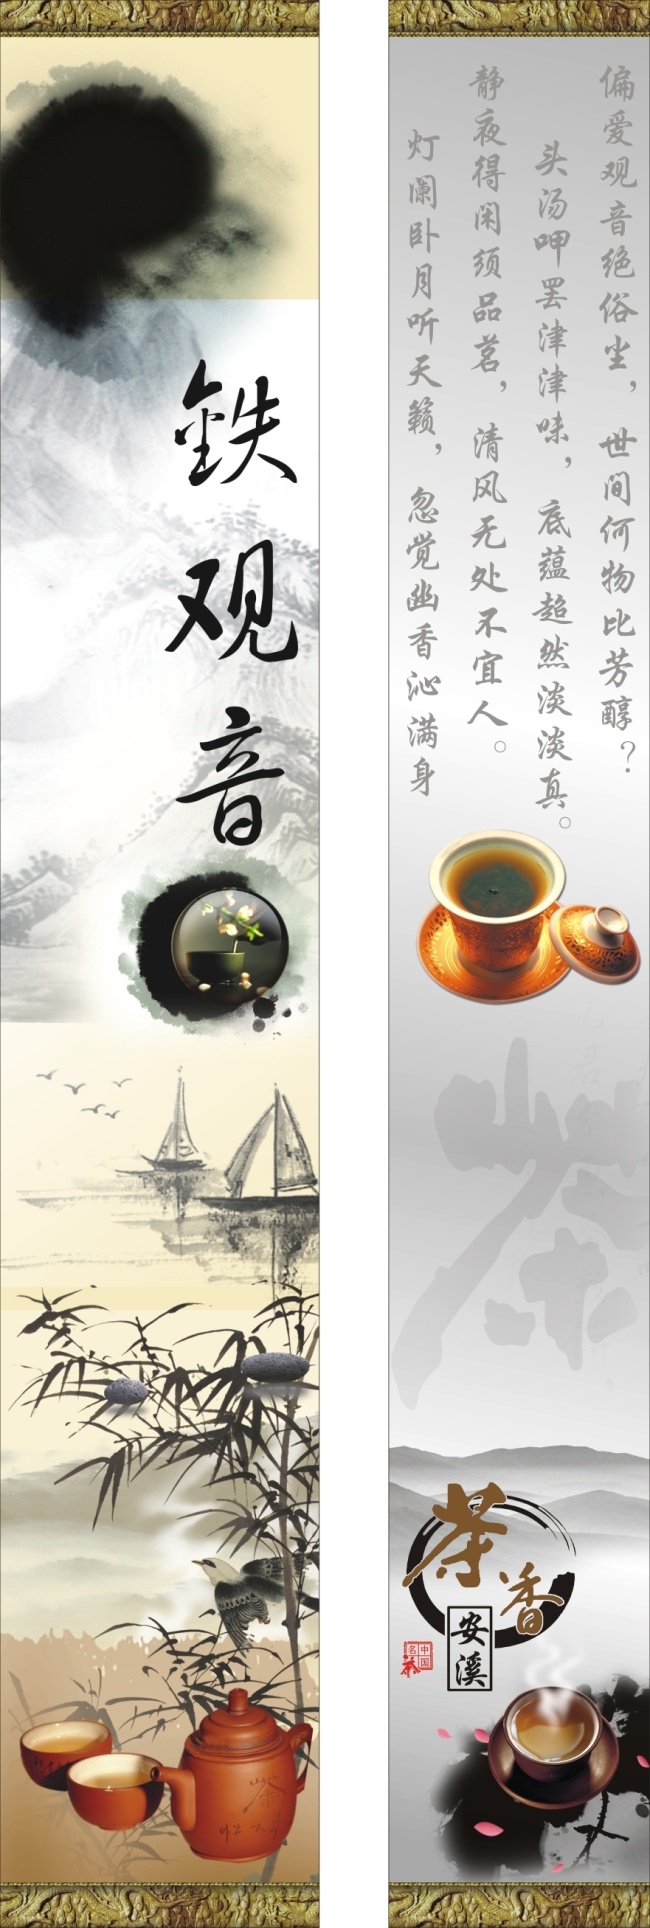 安溪 铁观音 茶 茶具 古典 铁观音茶 原创设计 原创海报